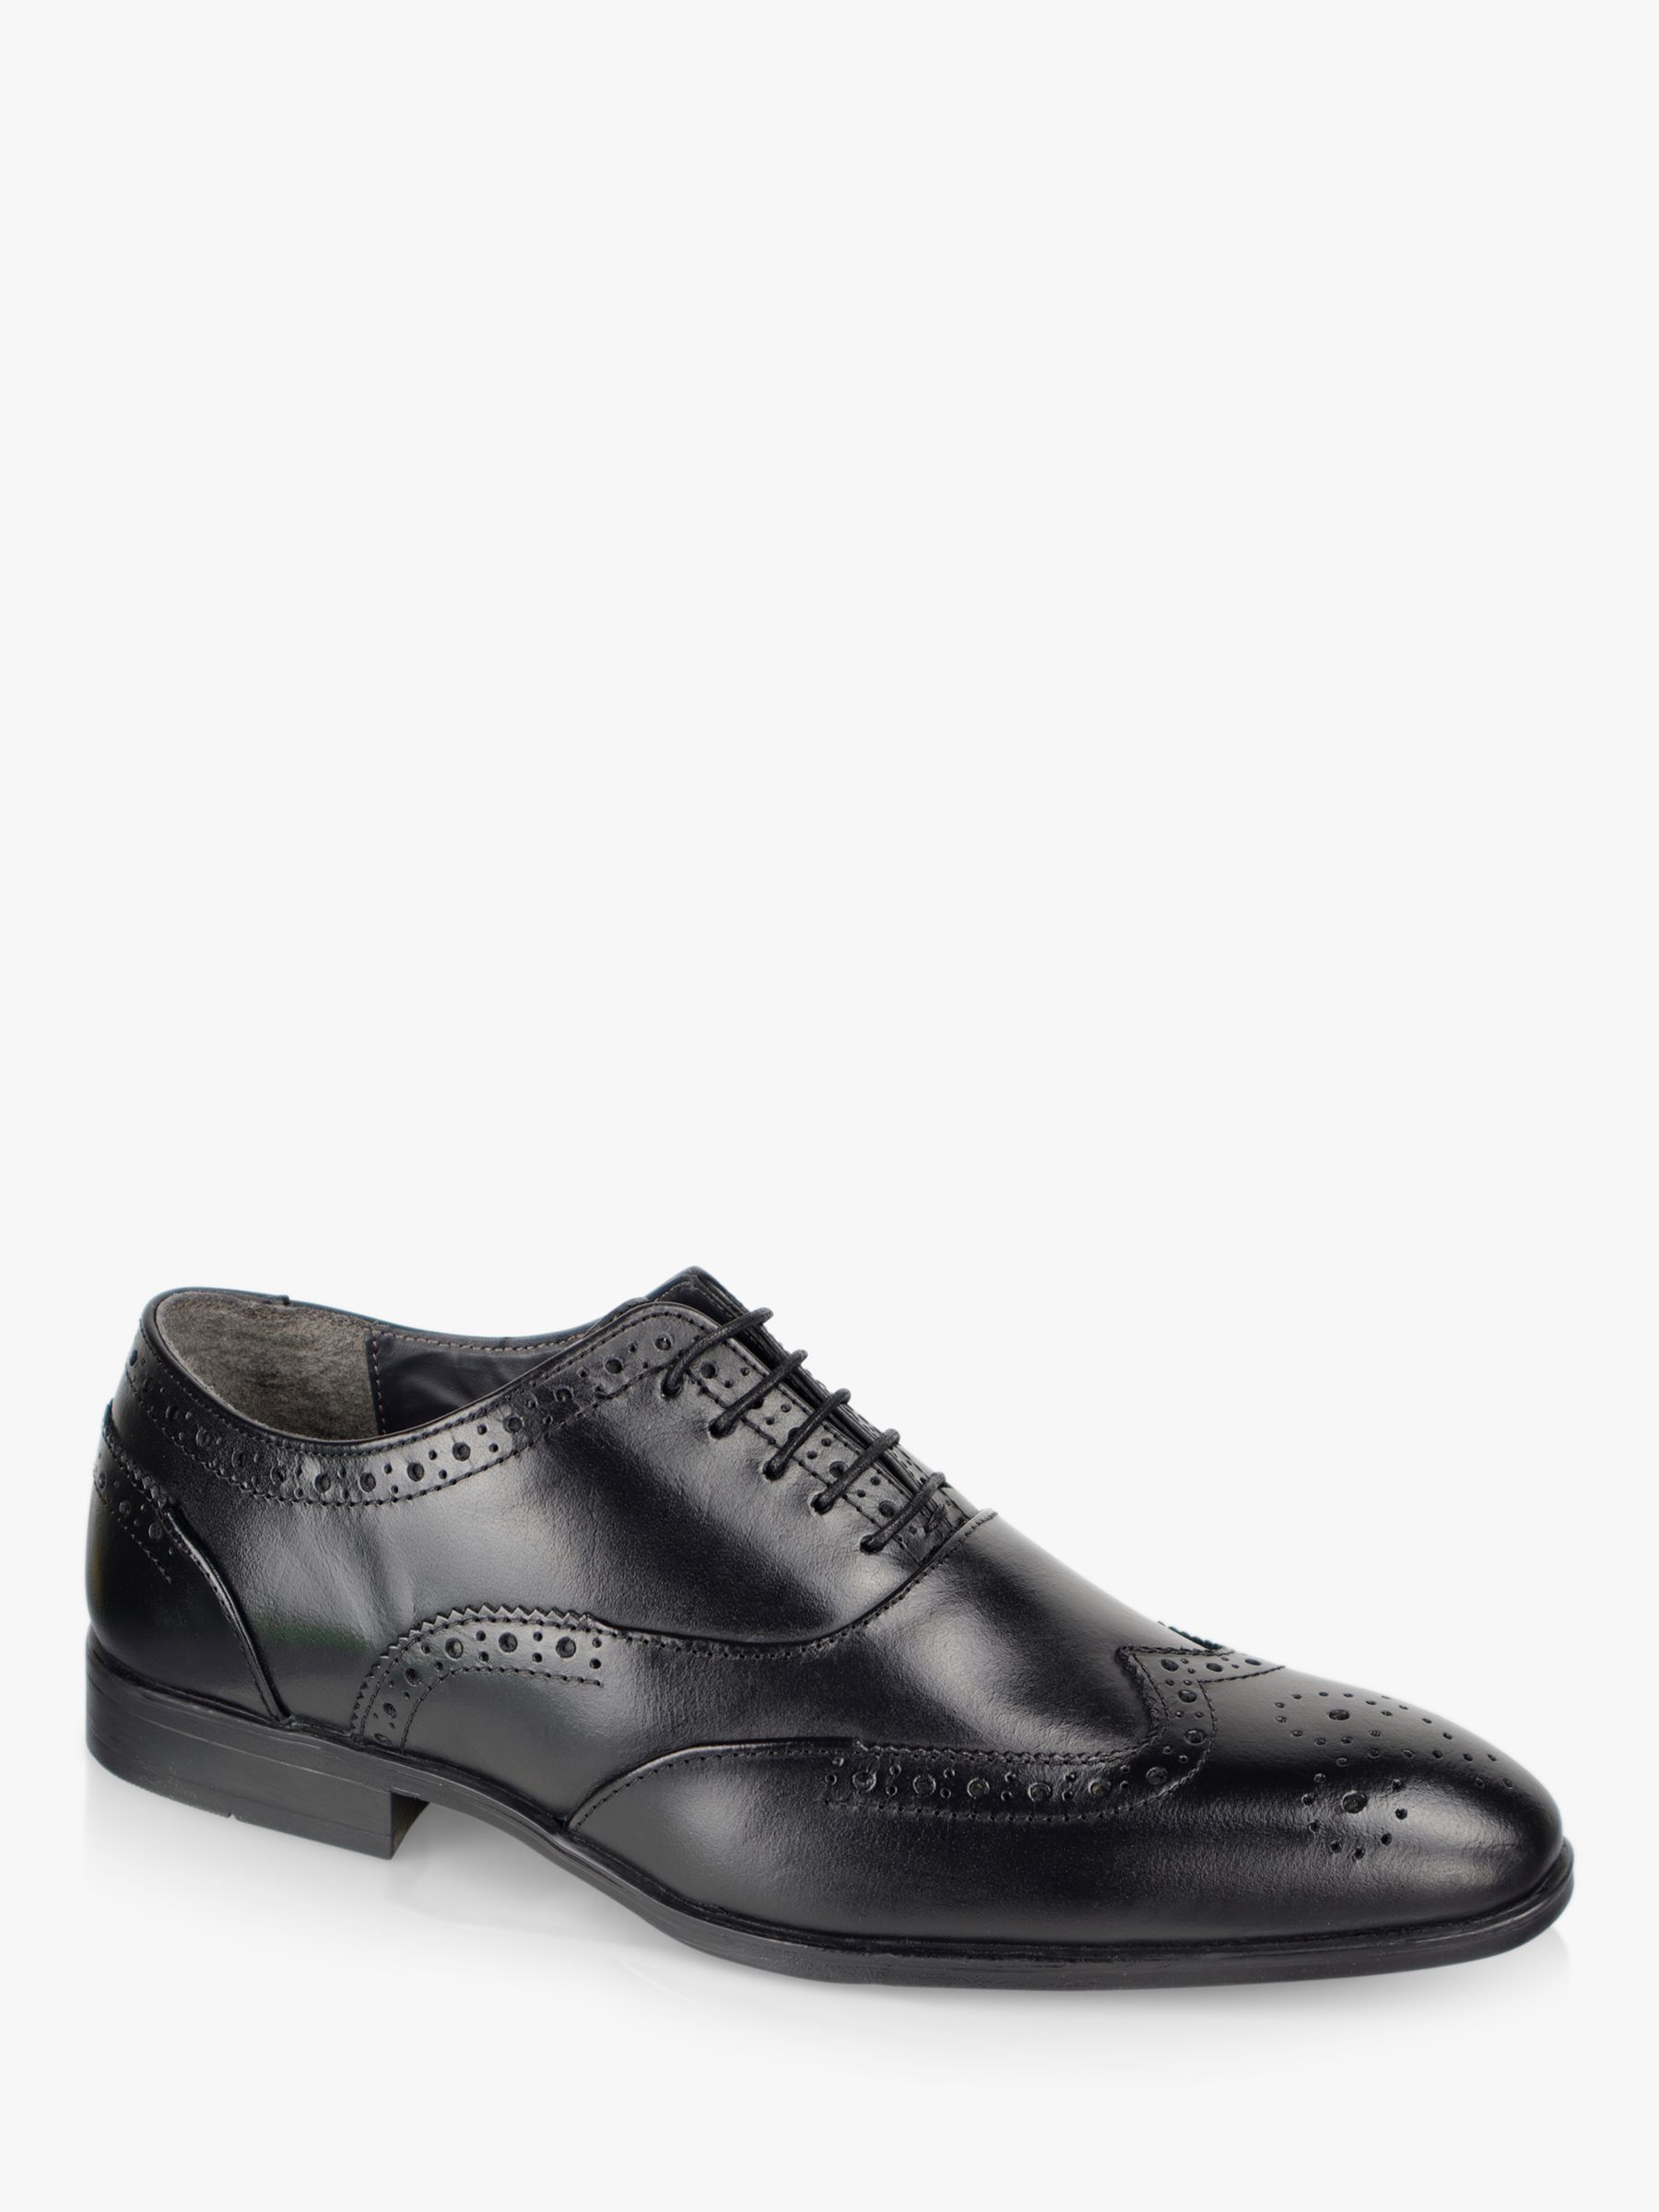 Silver Street London Oxford Shoes, Black, 7